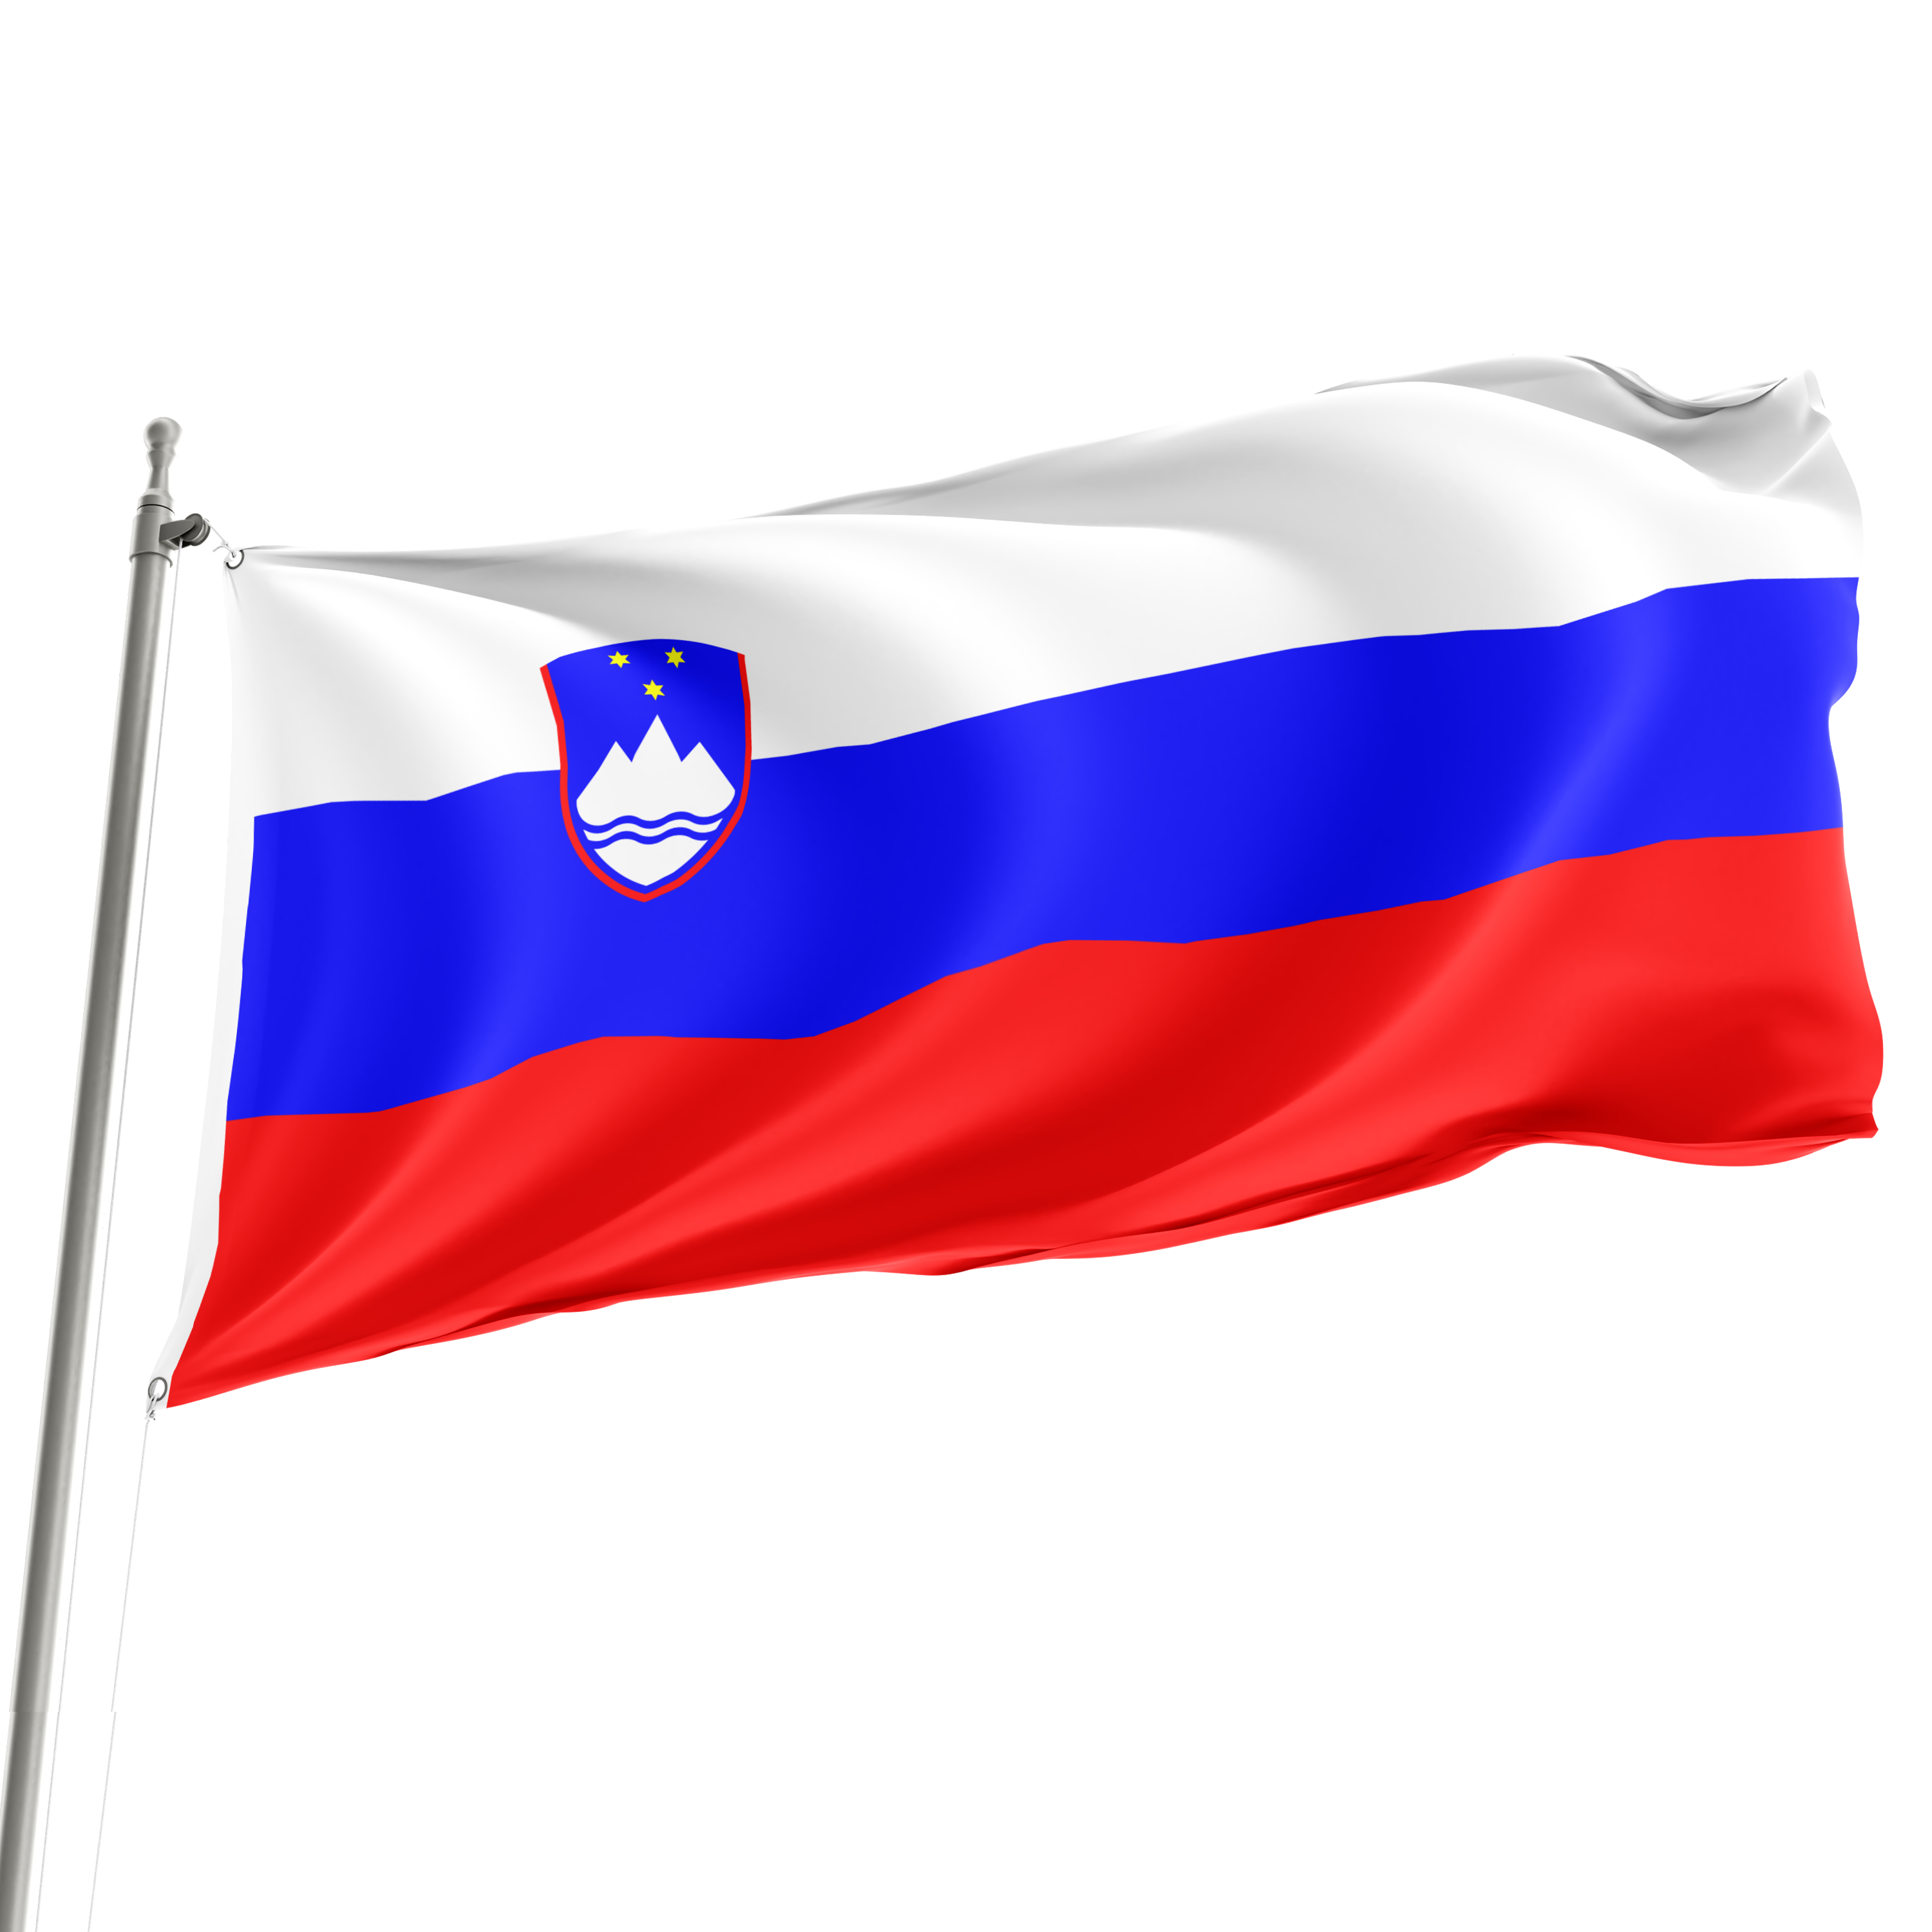 3' x 5' Slovenia Flag